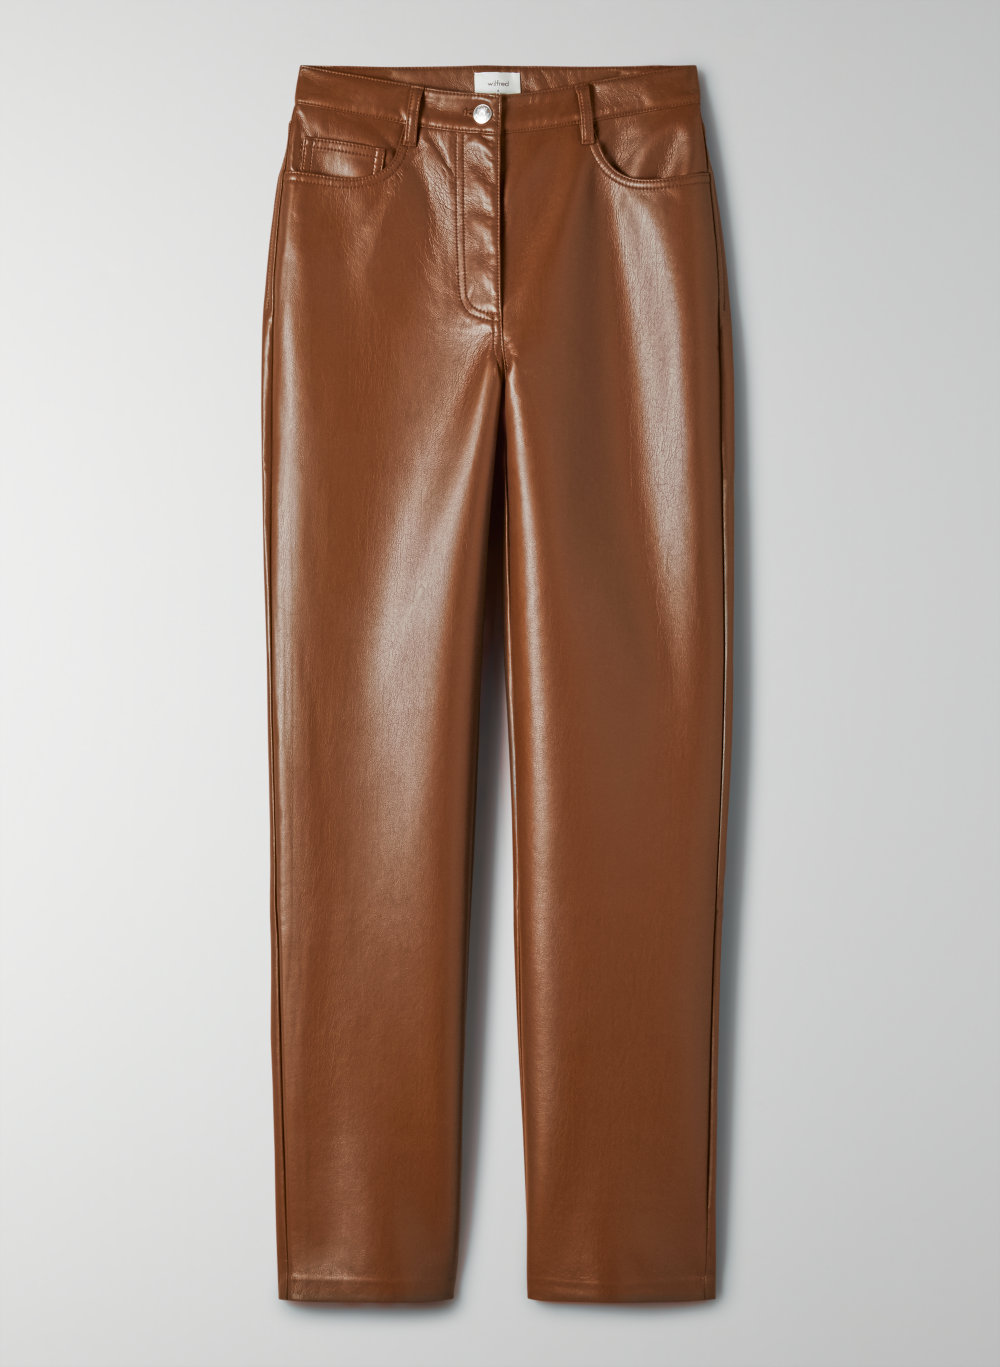 cognac leather pants